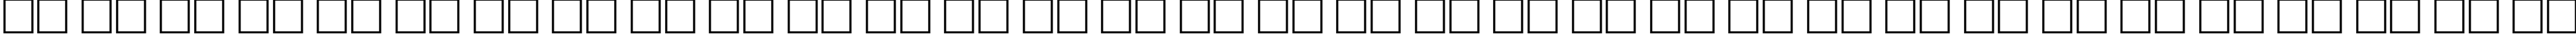 Пример написания русского алфавита шрифтом Astigma Regular